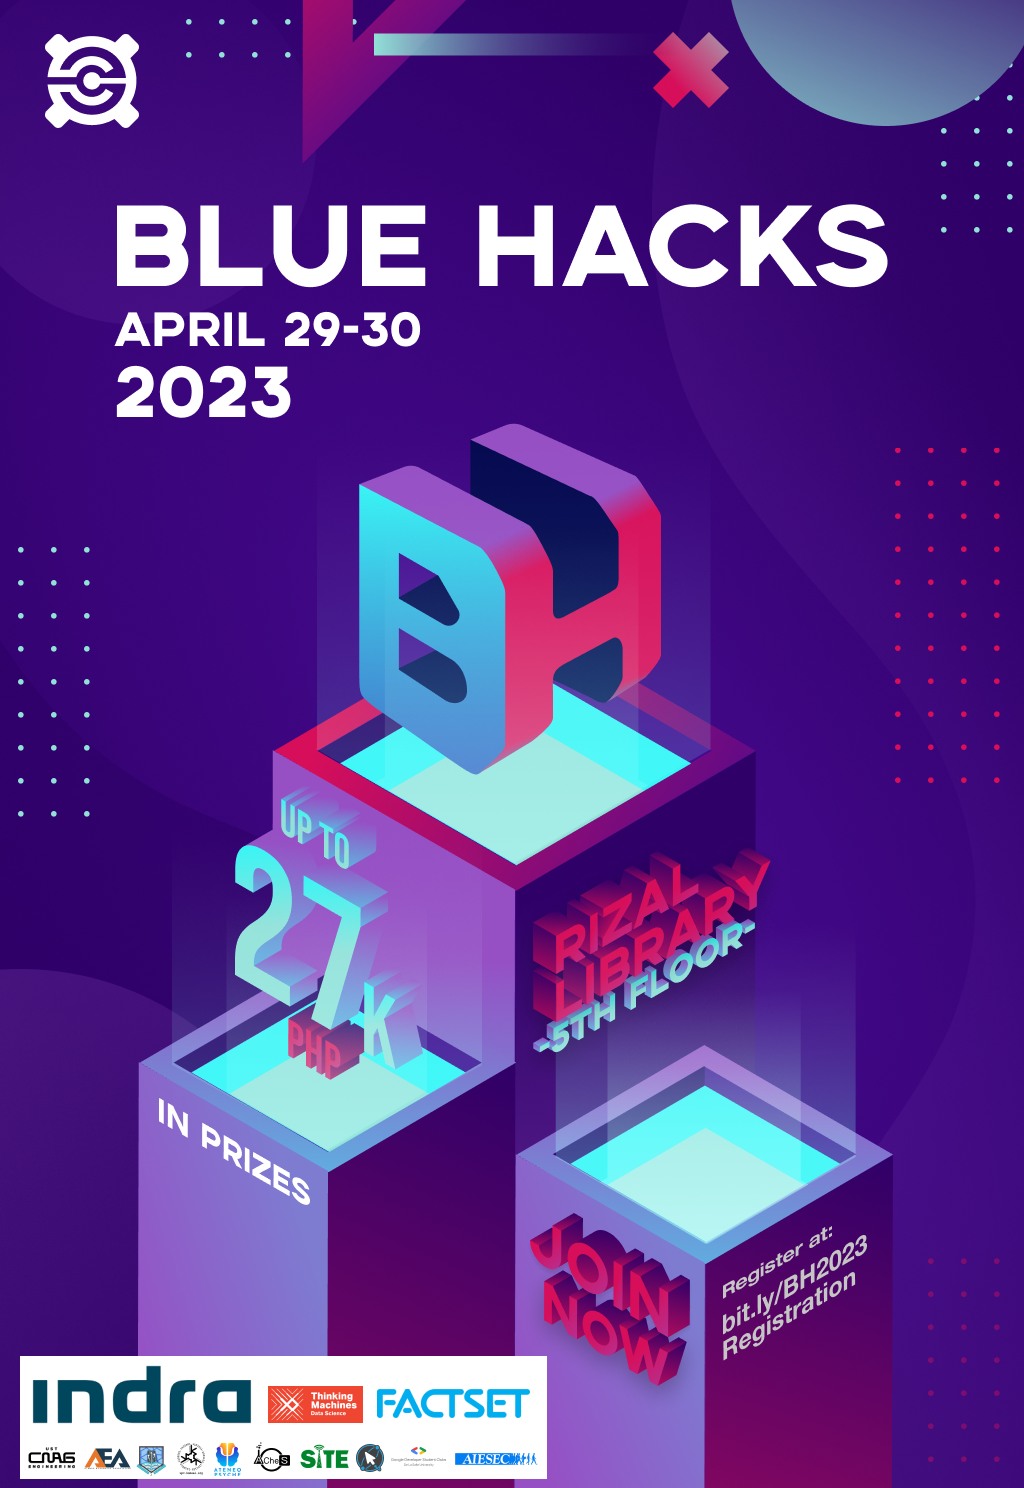 CompSat's Blue Hacks 2023